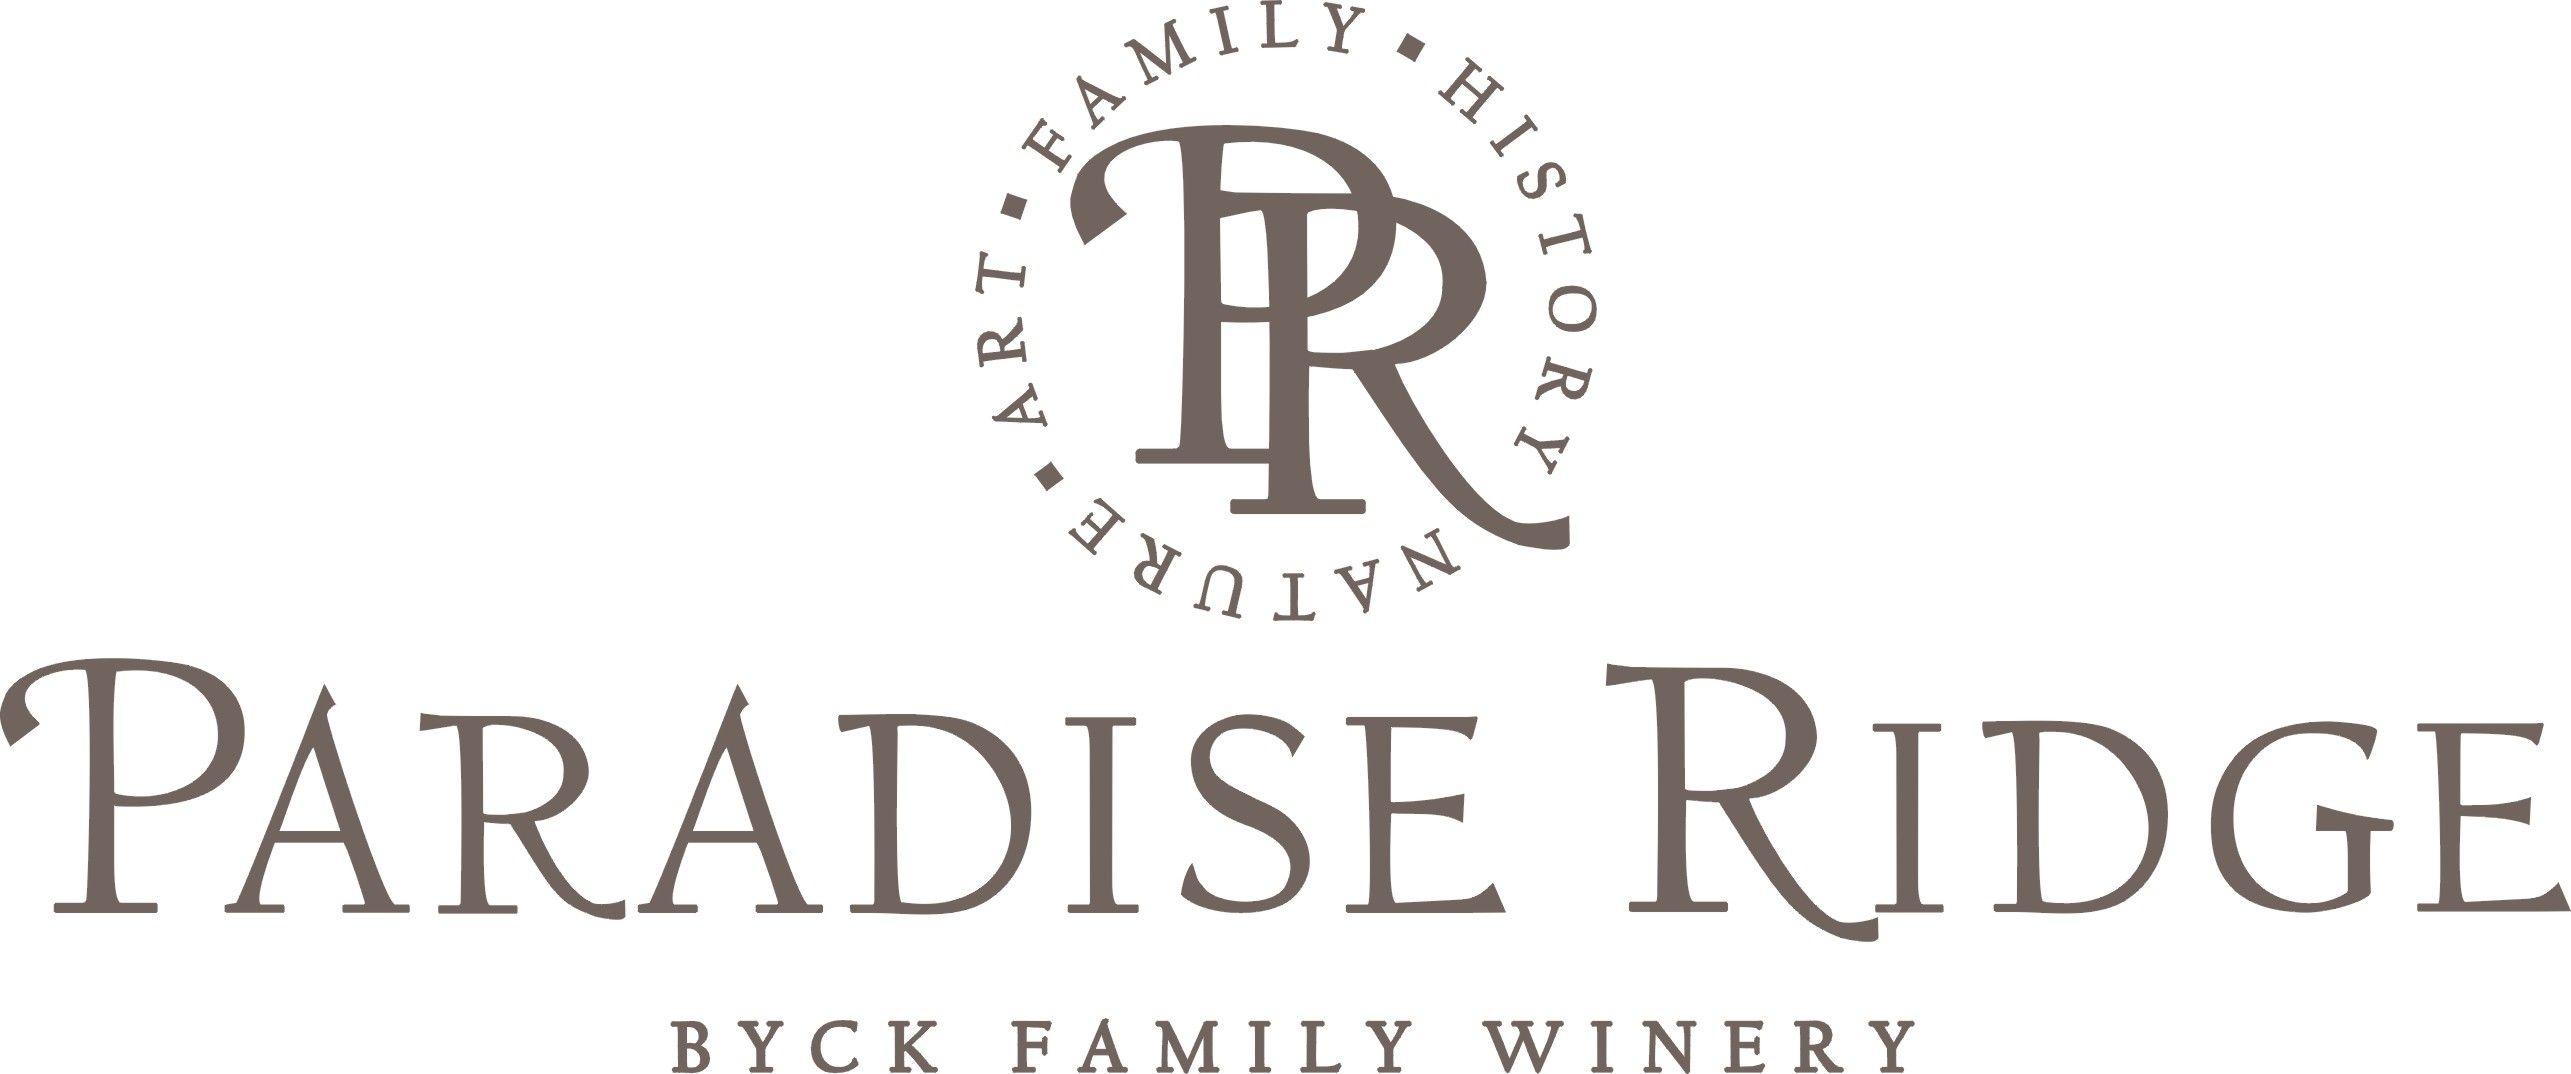 Paradise Ridge Logo - Paradise Ridge Winery - Kenwood Location - Wine Road